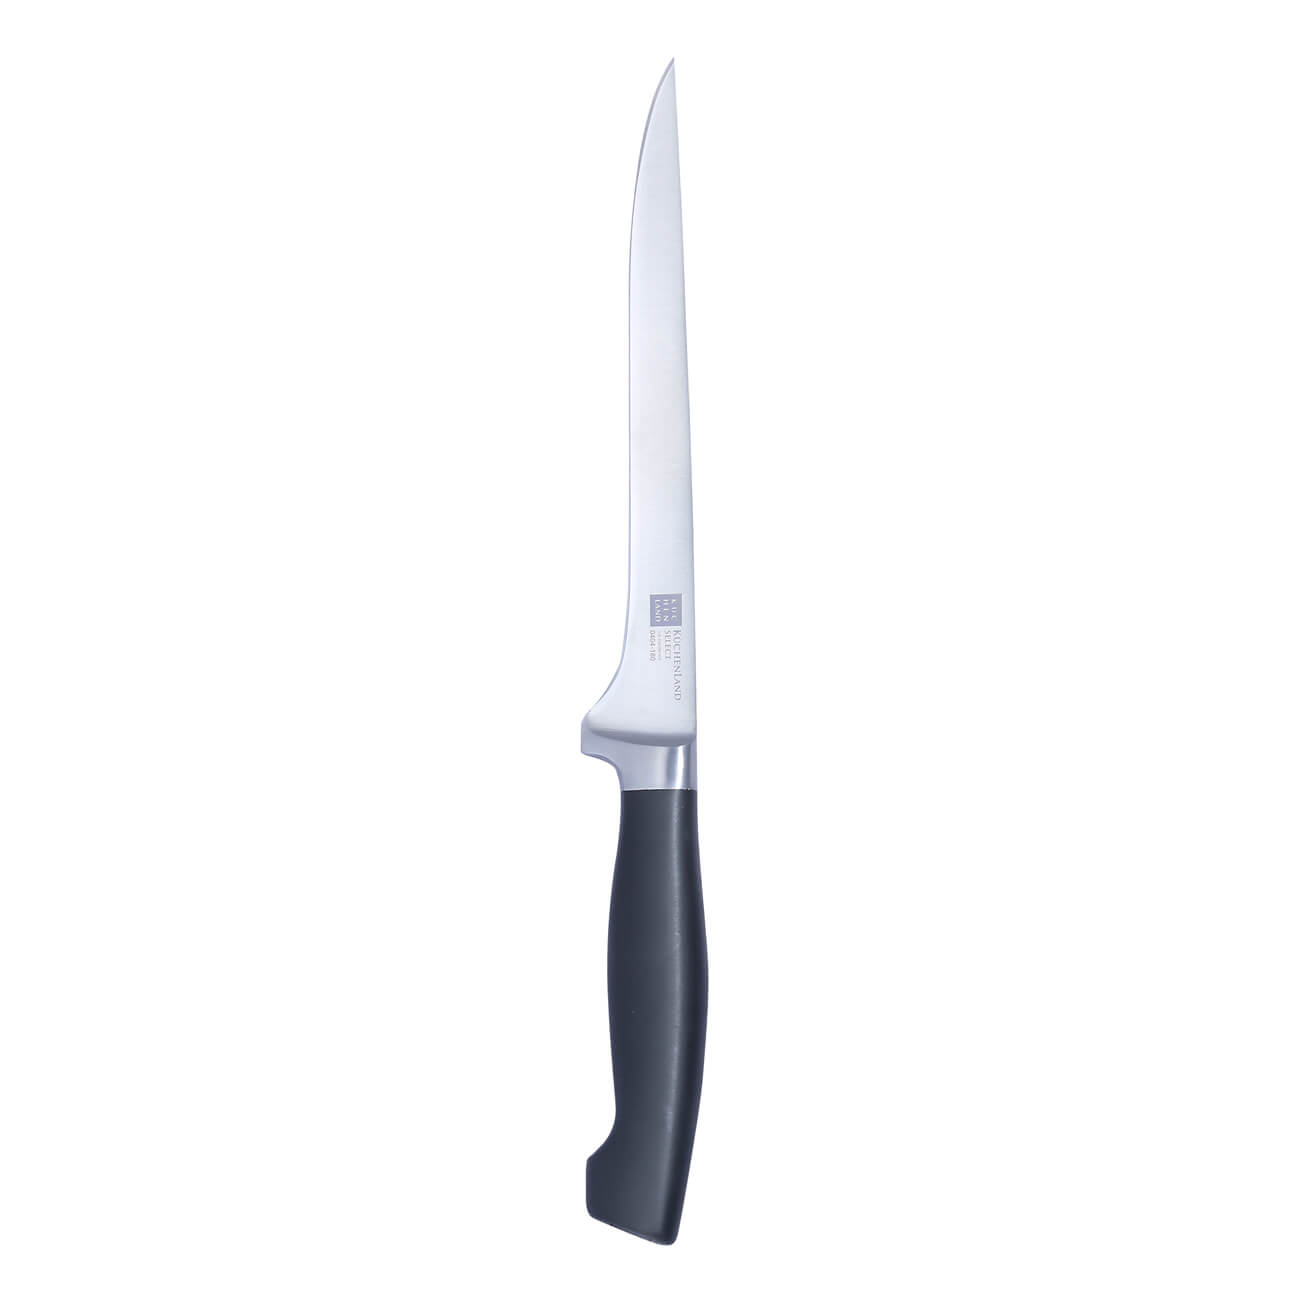 Нож филейный, 18 см, сталь/пластик, Select филейный нож mallony